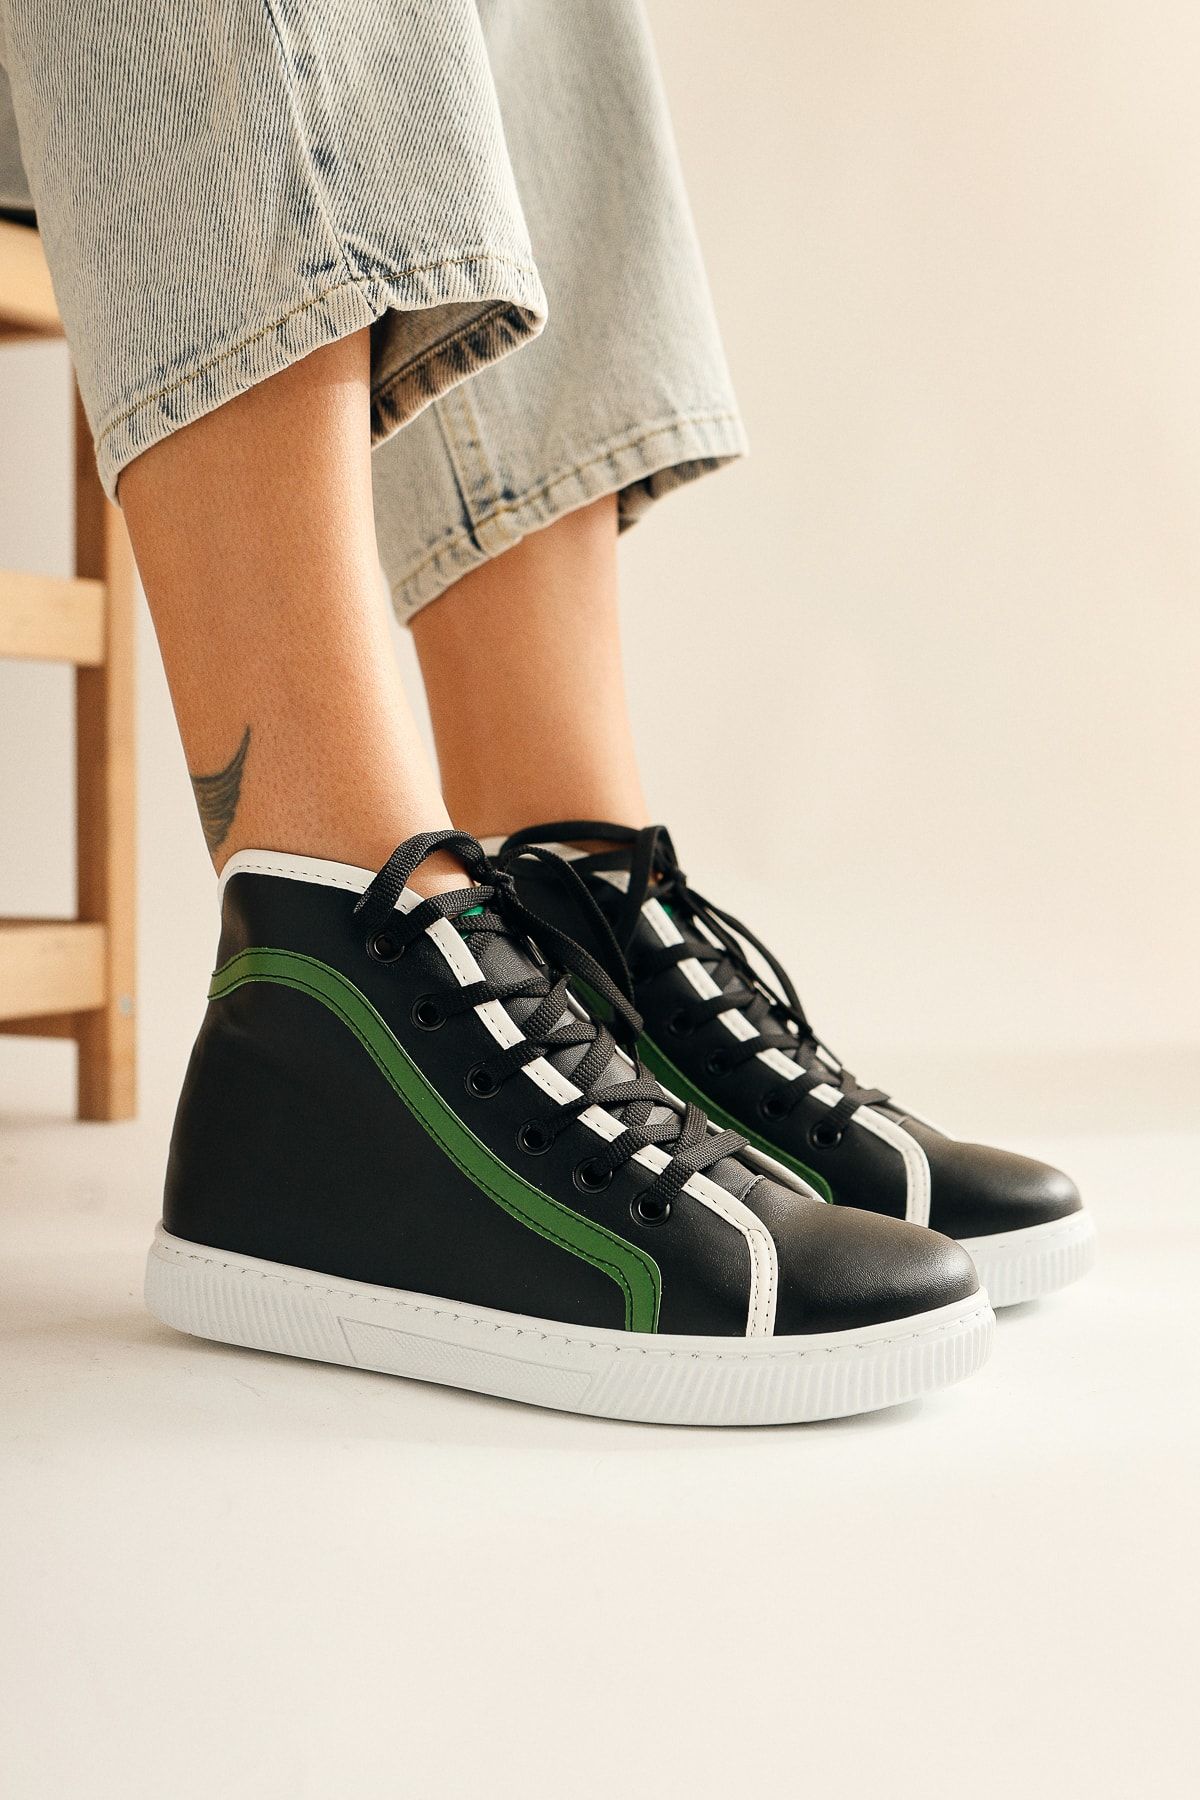 Limoya Abira Siyah Yeşil Bağcıklı Sneaker